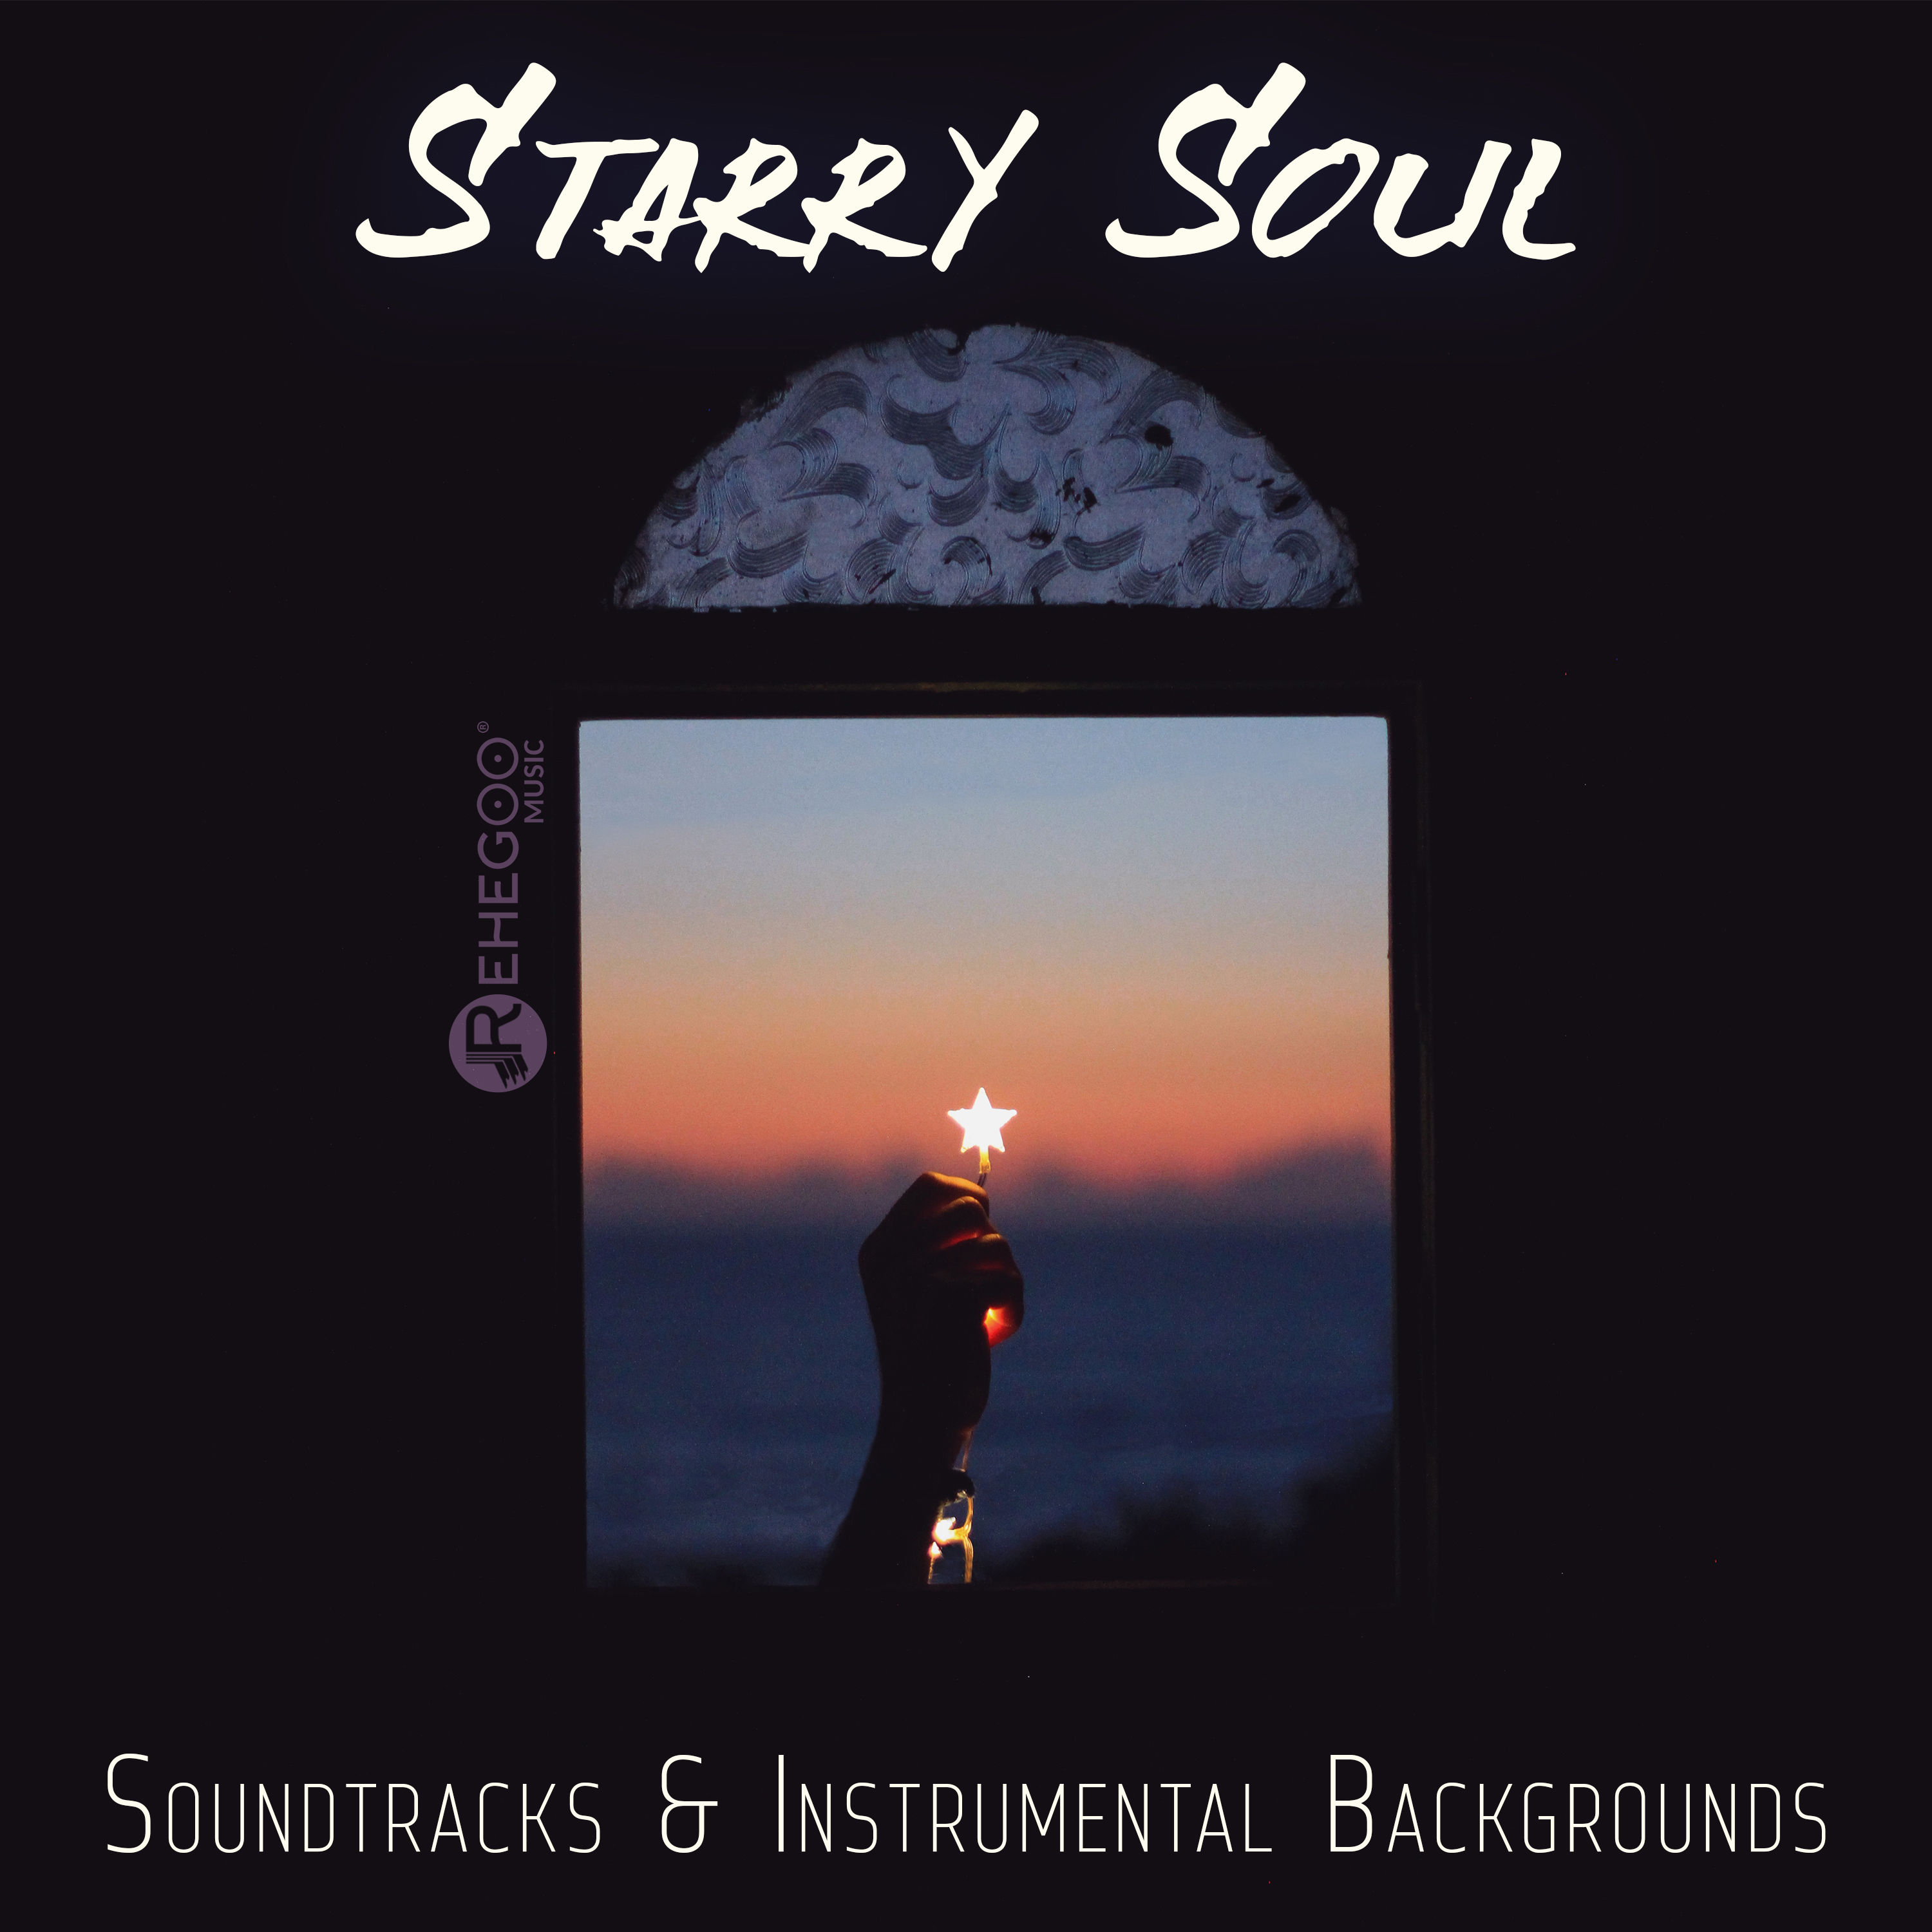 Starry_Soul. Soundtrack "Soul". Soul soundtrack